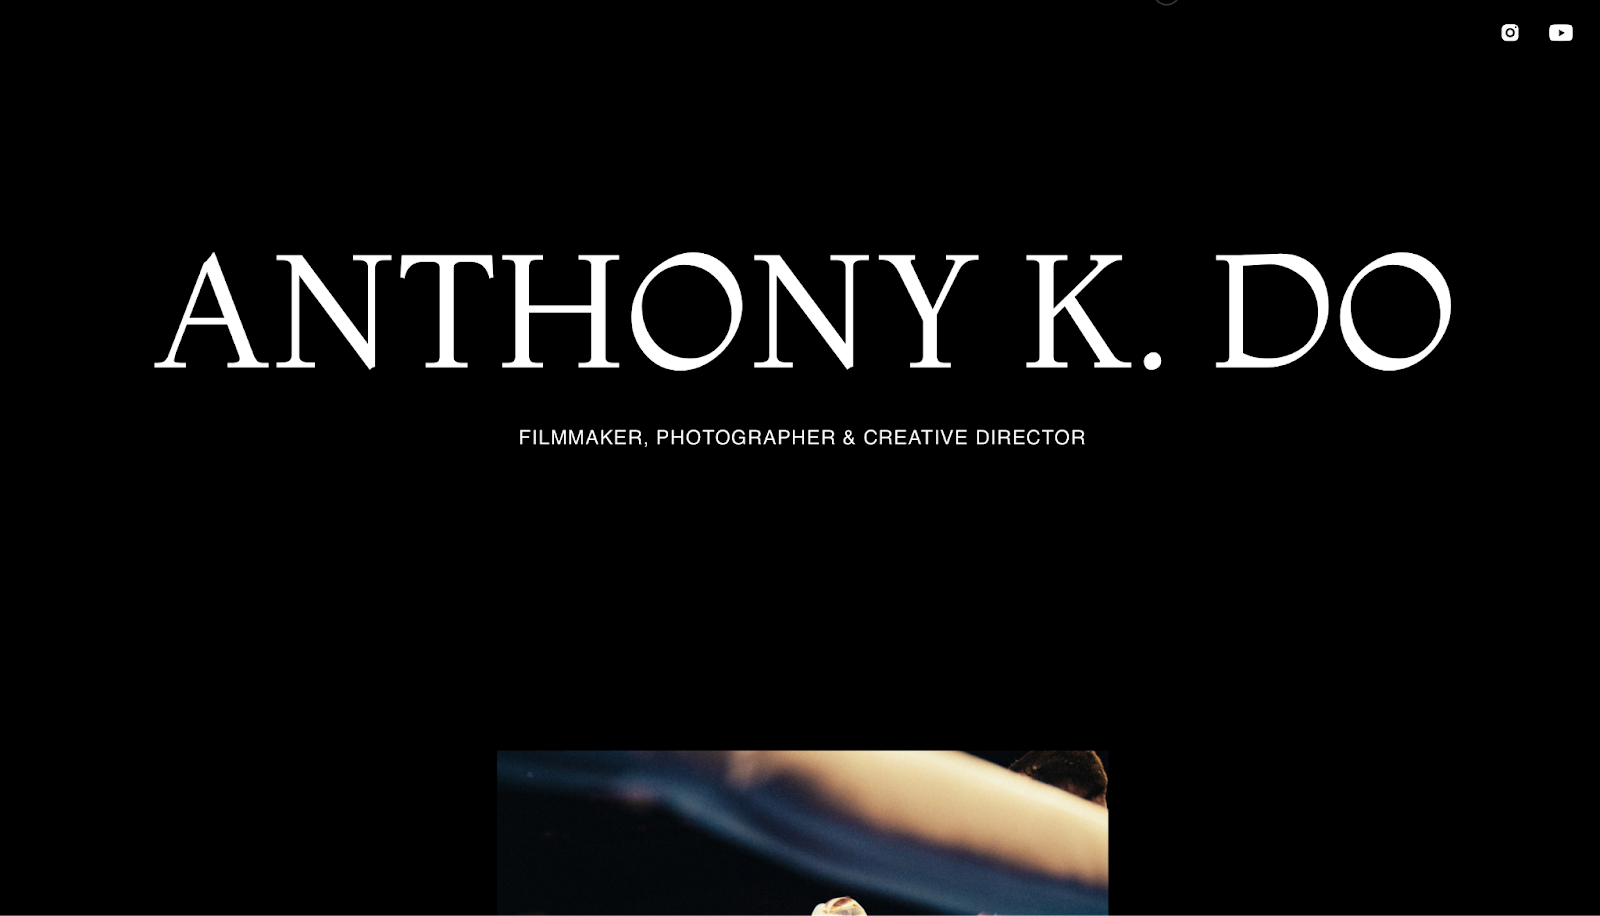 filmmaker website example, Anthony K. Do